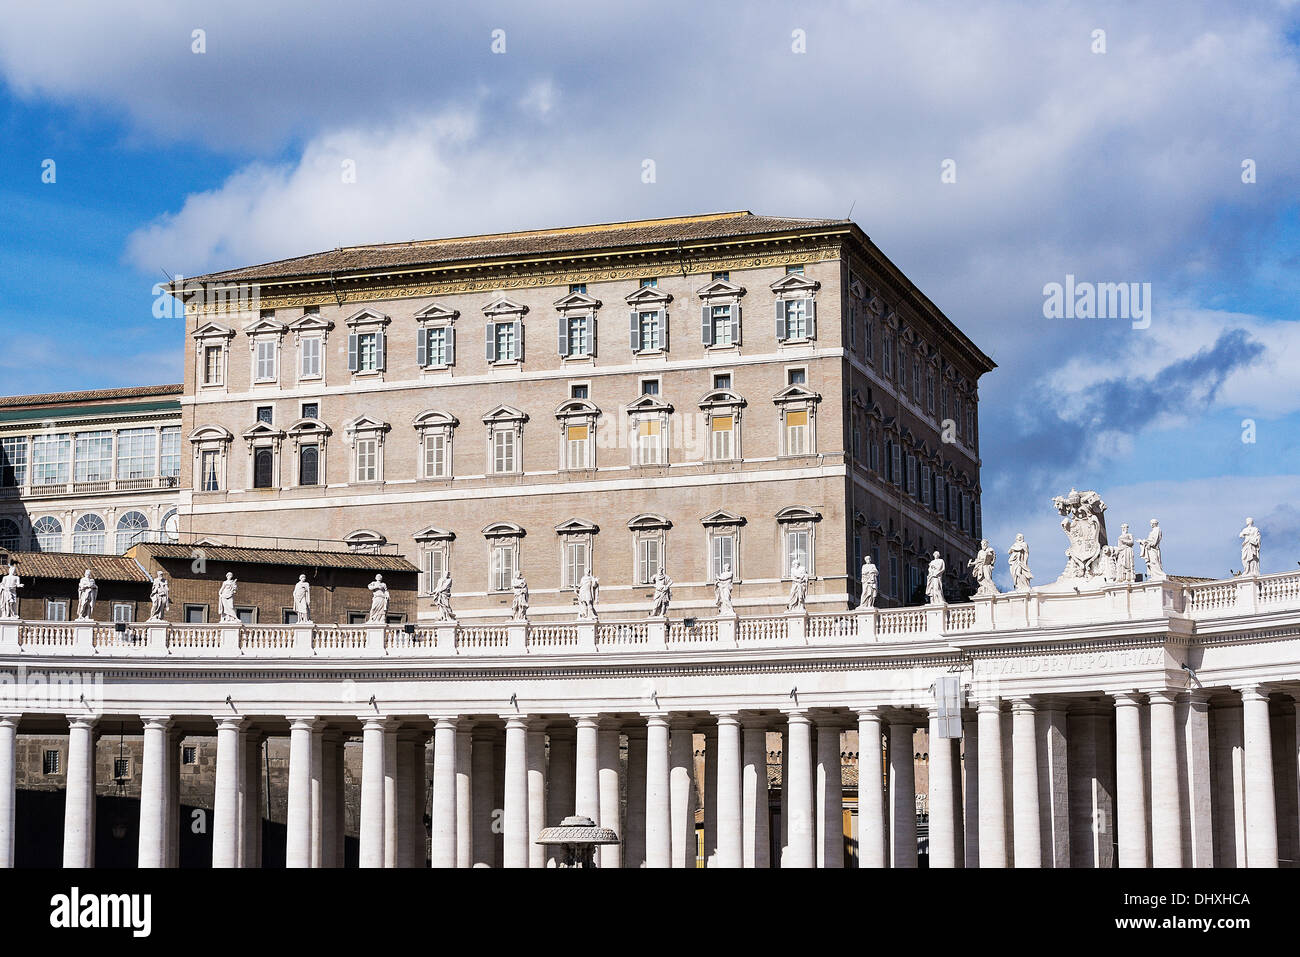 Appartements pontificaux et la colonnade du Bernin entourant la place Saint Pierre dans la Cité du Vatican, Rome, Italie Banque D'Images